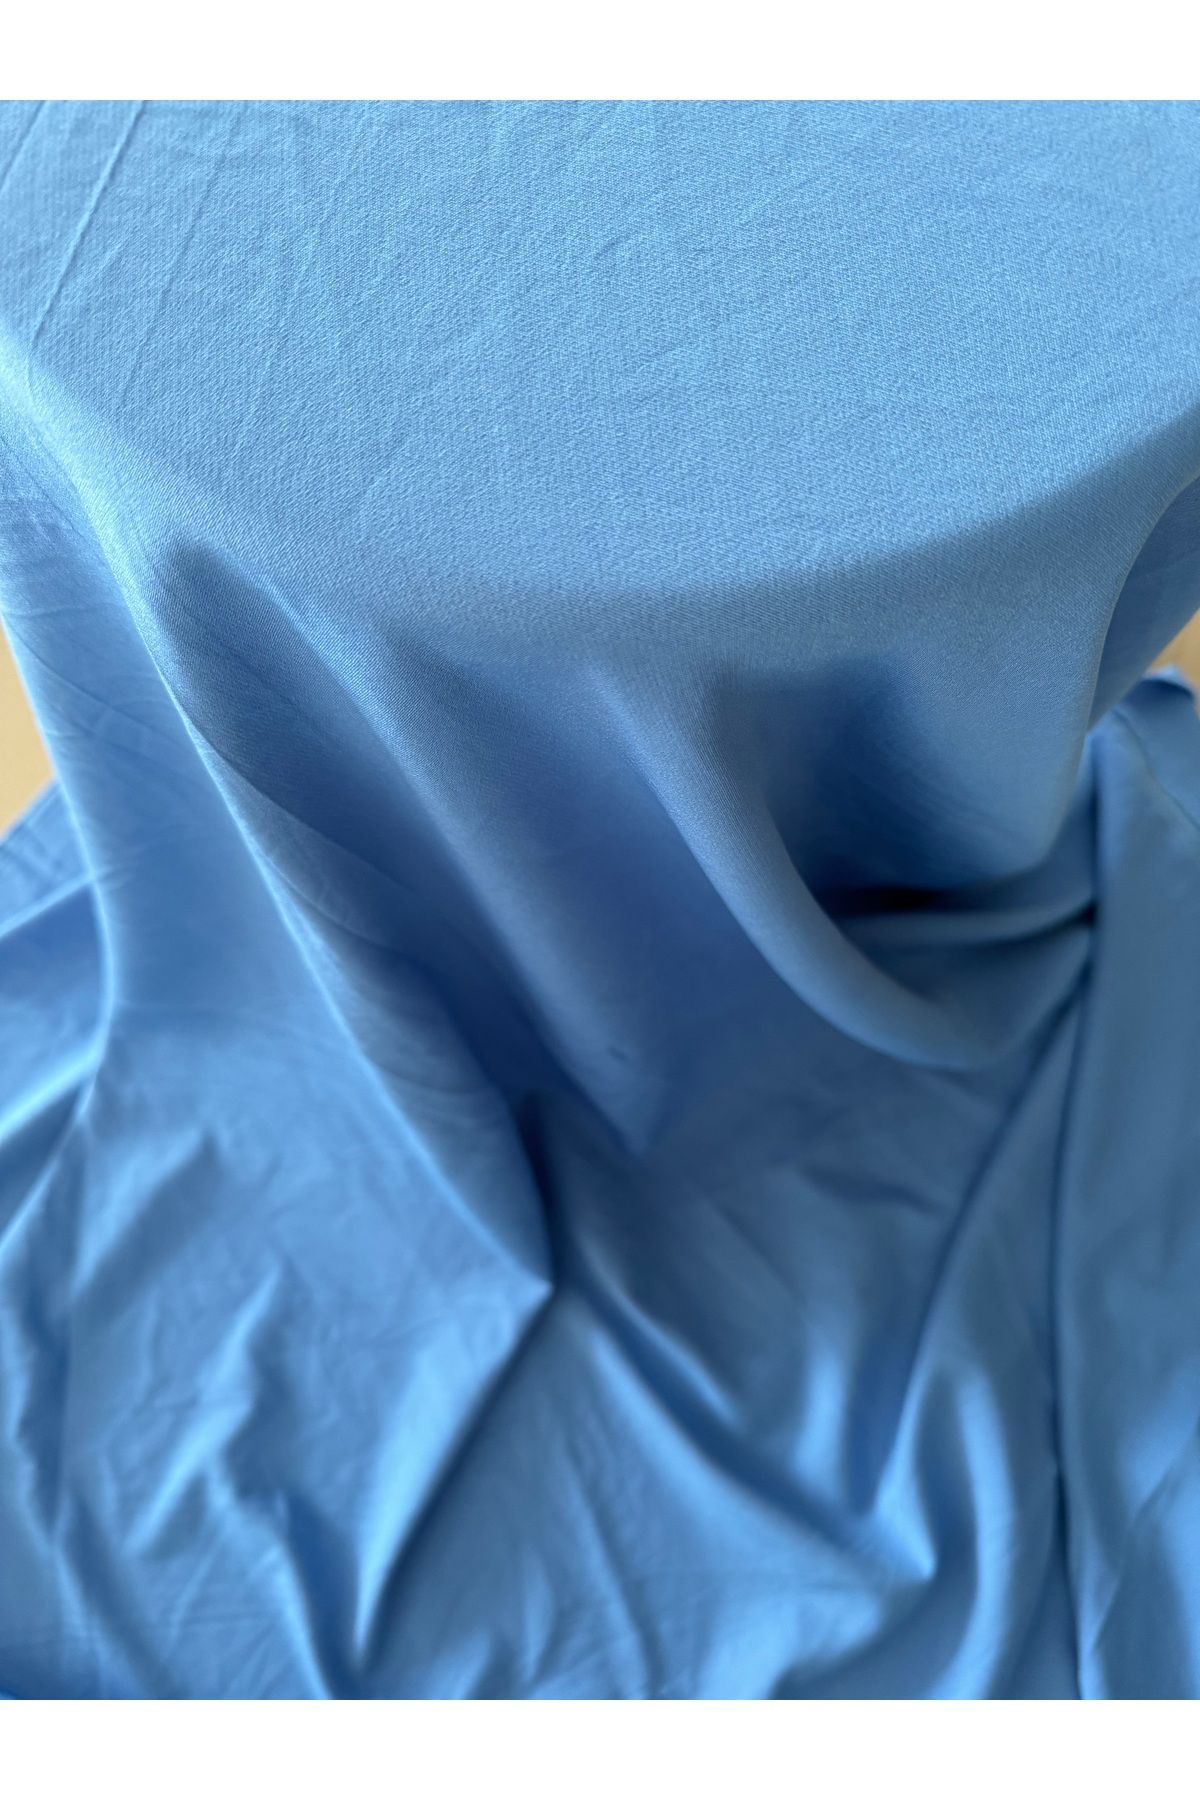 Kalben Kumaş Mavi Dalgıç Kumaş - Giyimlik Dalgıç Kumaş Parça Kumaş (150x100cm)